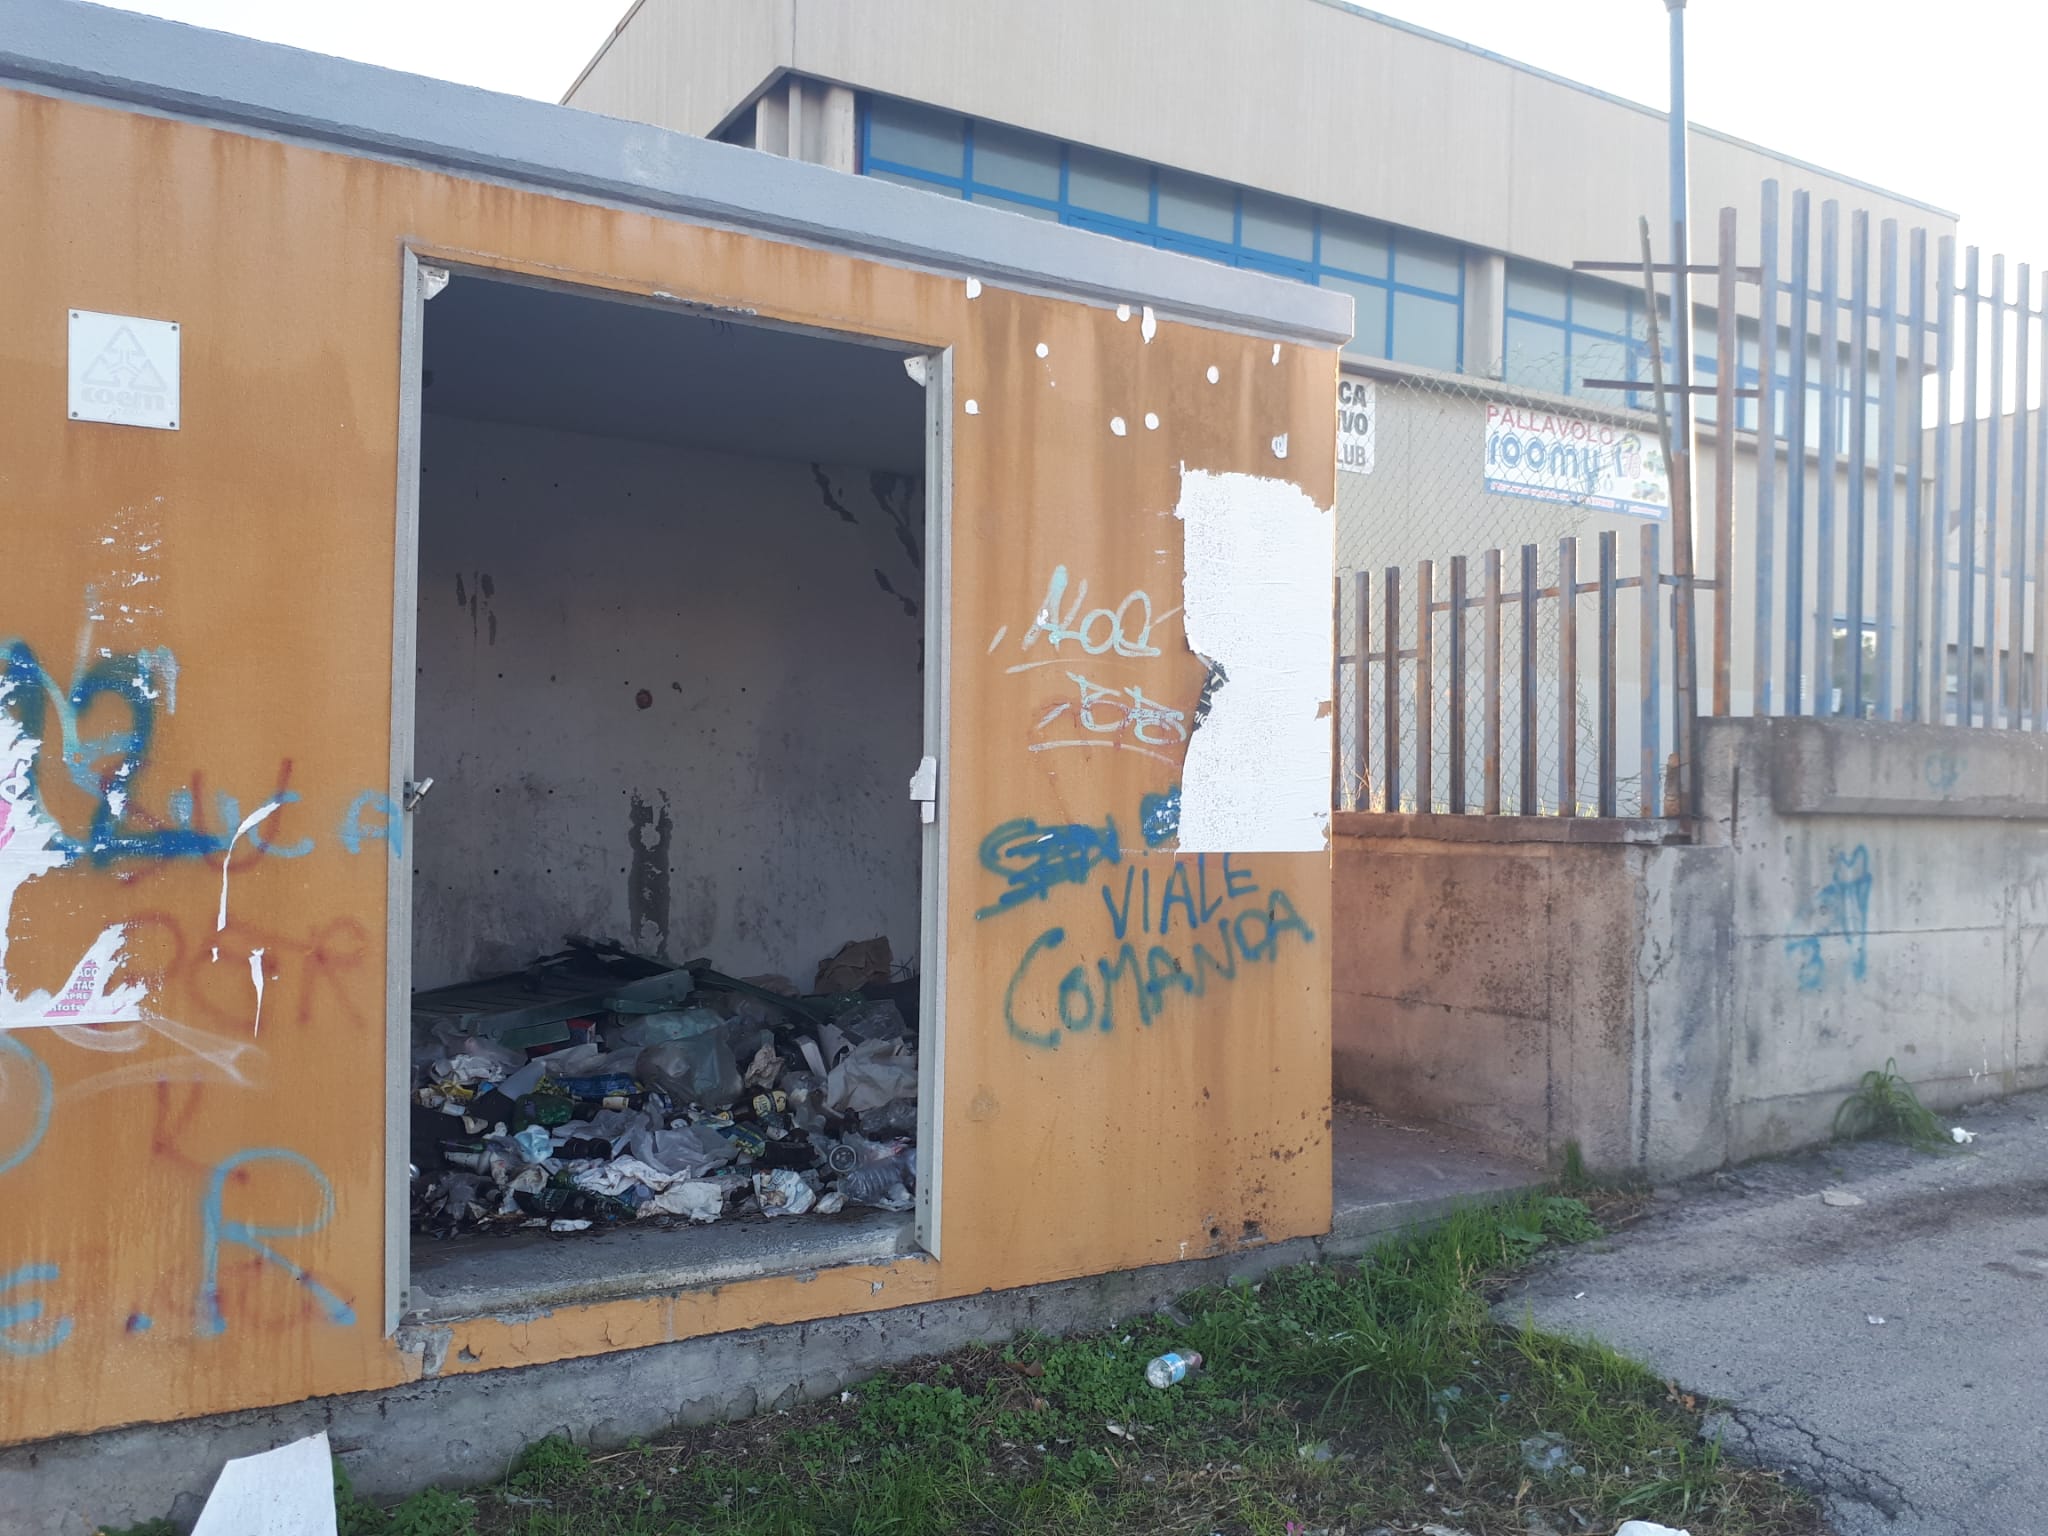 Casotto vandalizzato in via Tasso a Catania, l’allarme lanciato dal comitato Romolo Murri